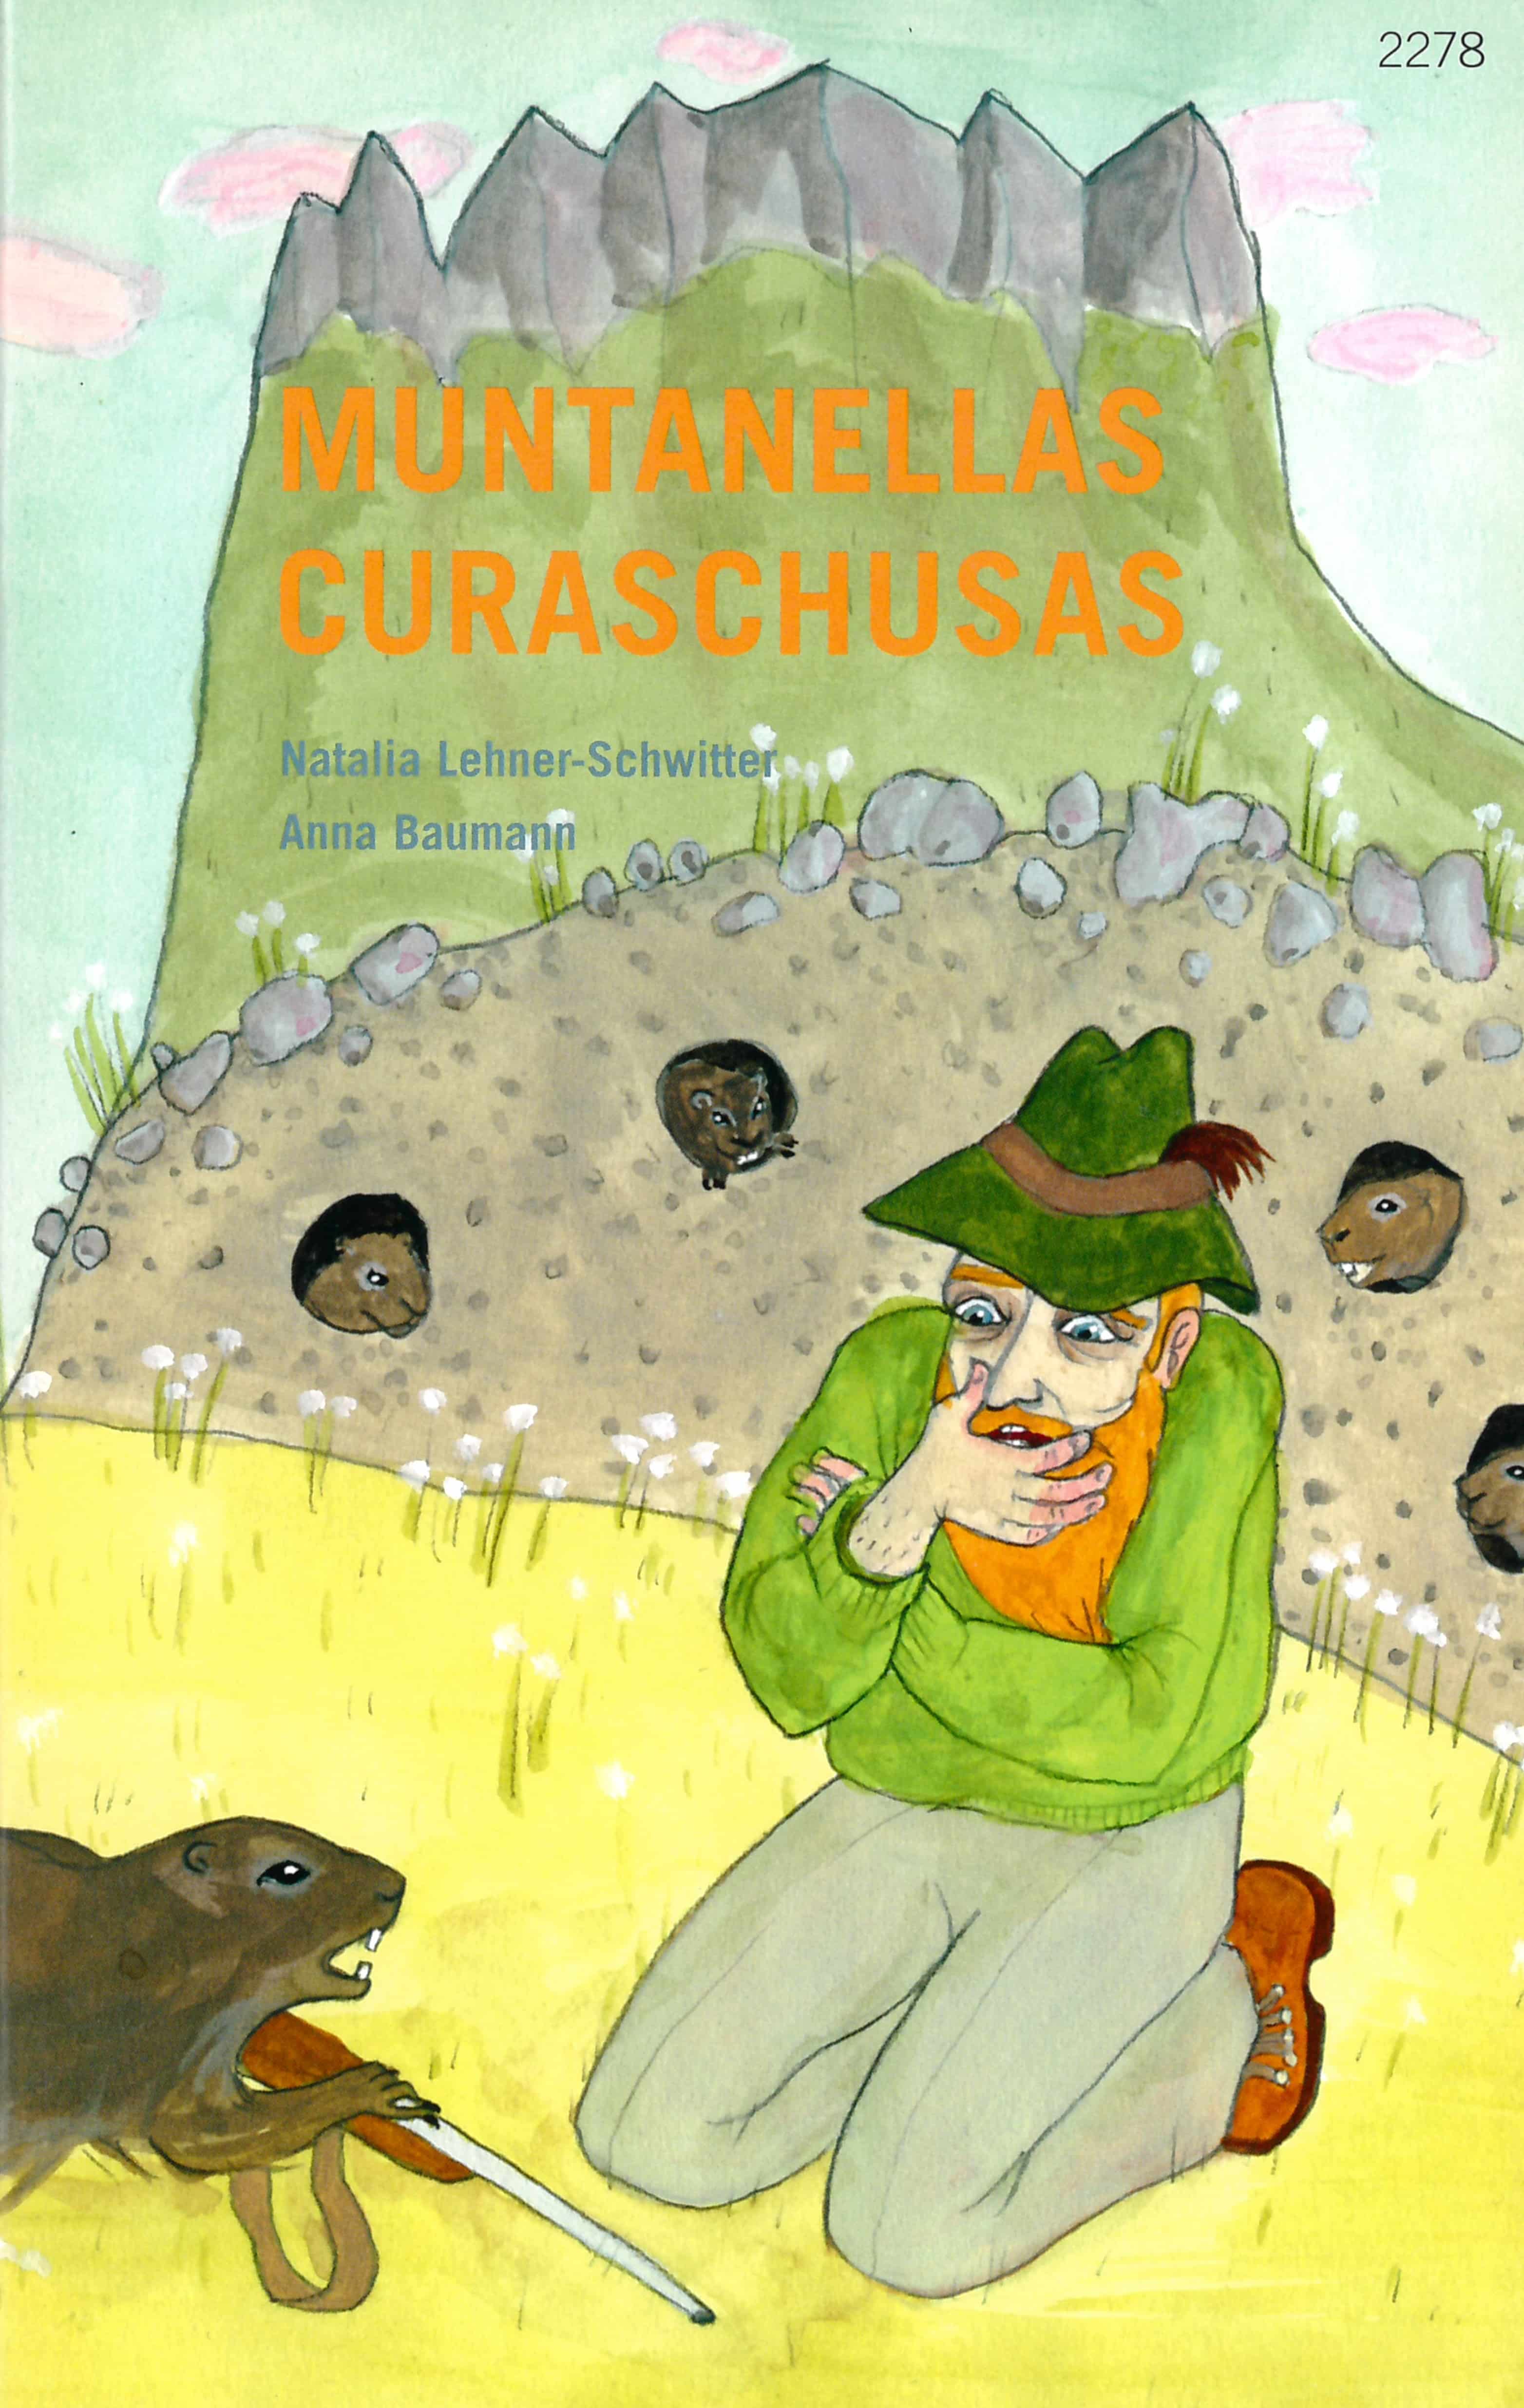 Muntanellas curaschusas, ein Kinderbuch von Natalia Lehner-Schwitter, Illustration Anna Baumann, SJW Verlag, Natur